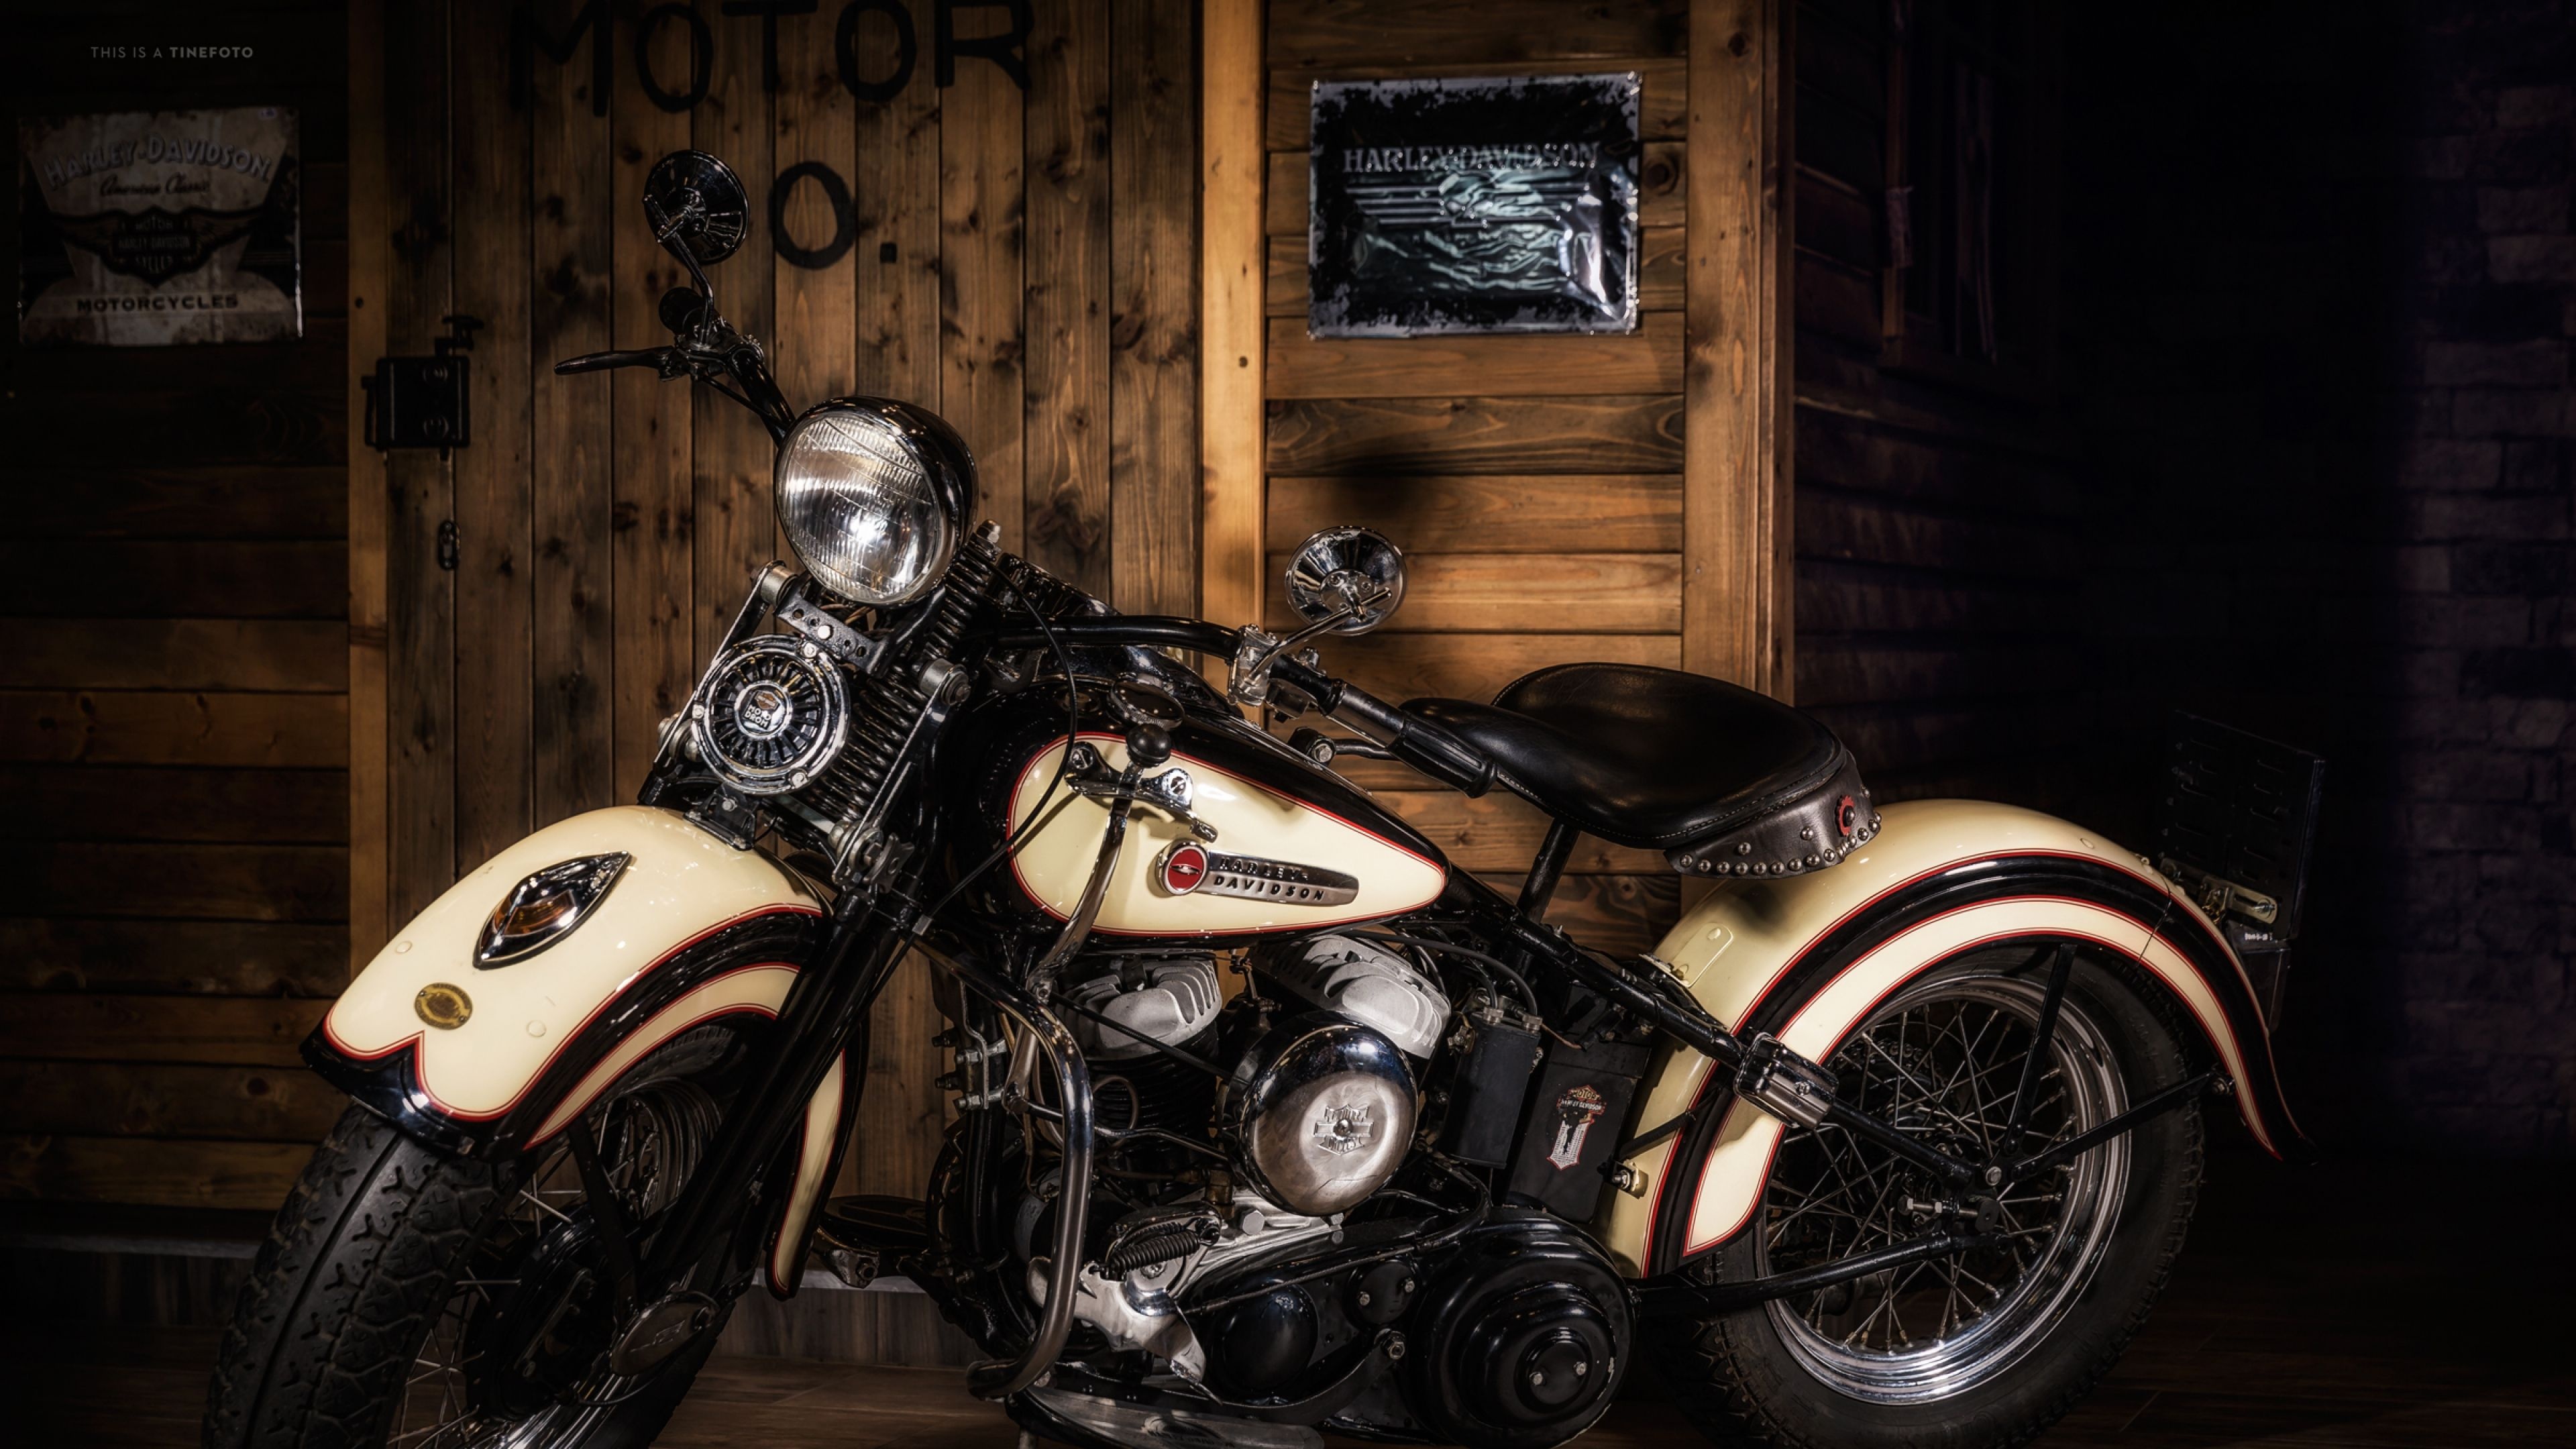 Harley Motorcycle wallpapers, Top quality, 3840x2160 4K Desktop